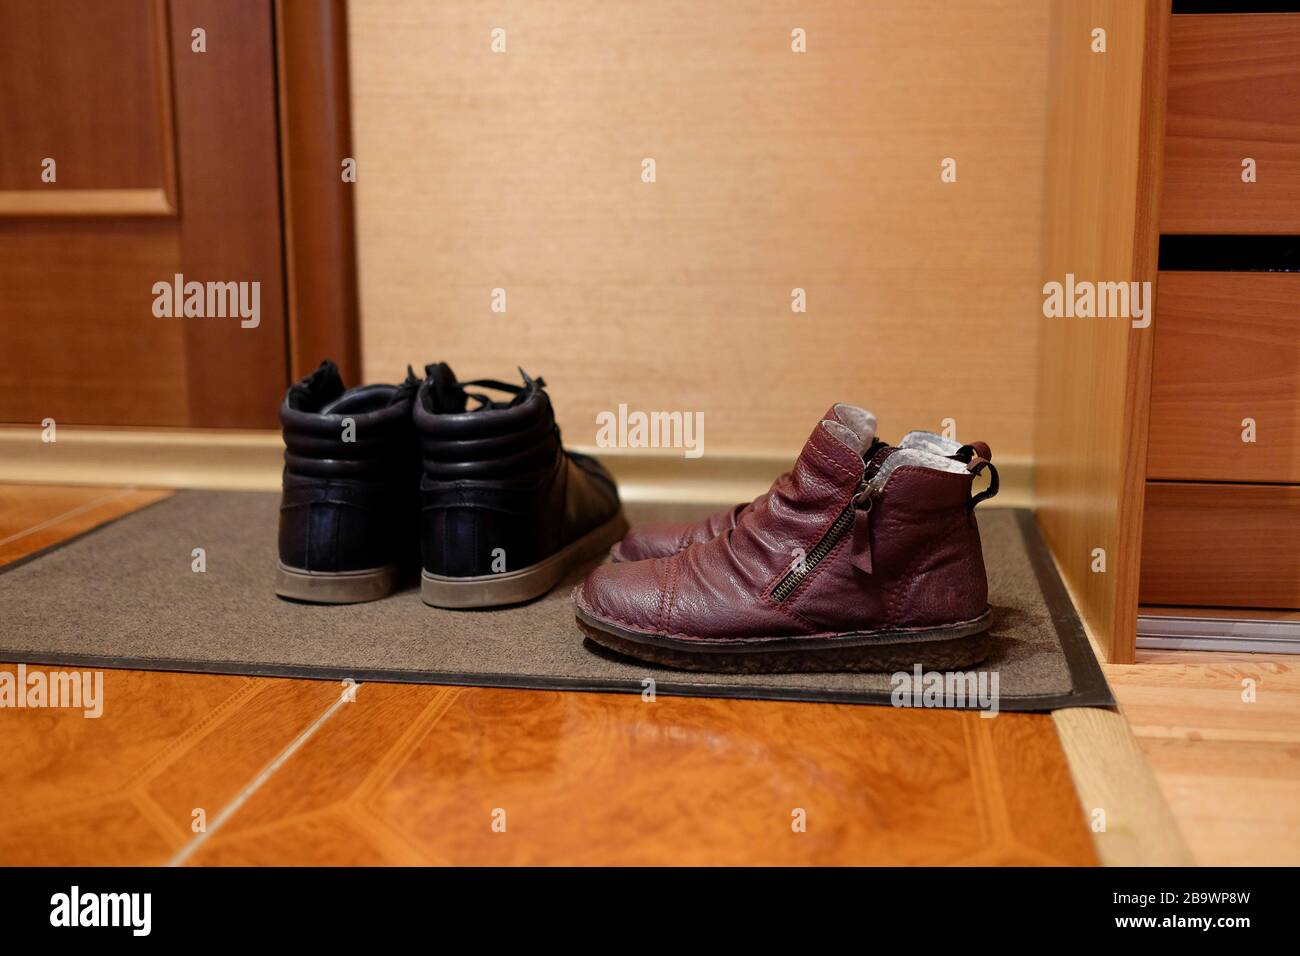 Zwei Paar Schuhe auf einer Türmatte. Schuhe im Flur. Tragekomfort zu Hause. Unterseite, Seitenansicht. Stockfoto